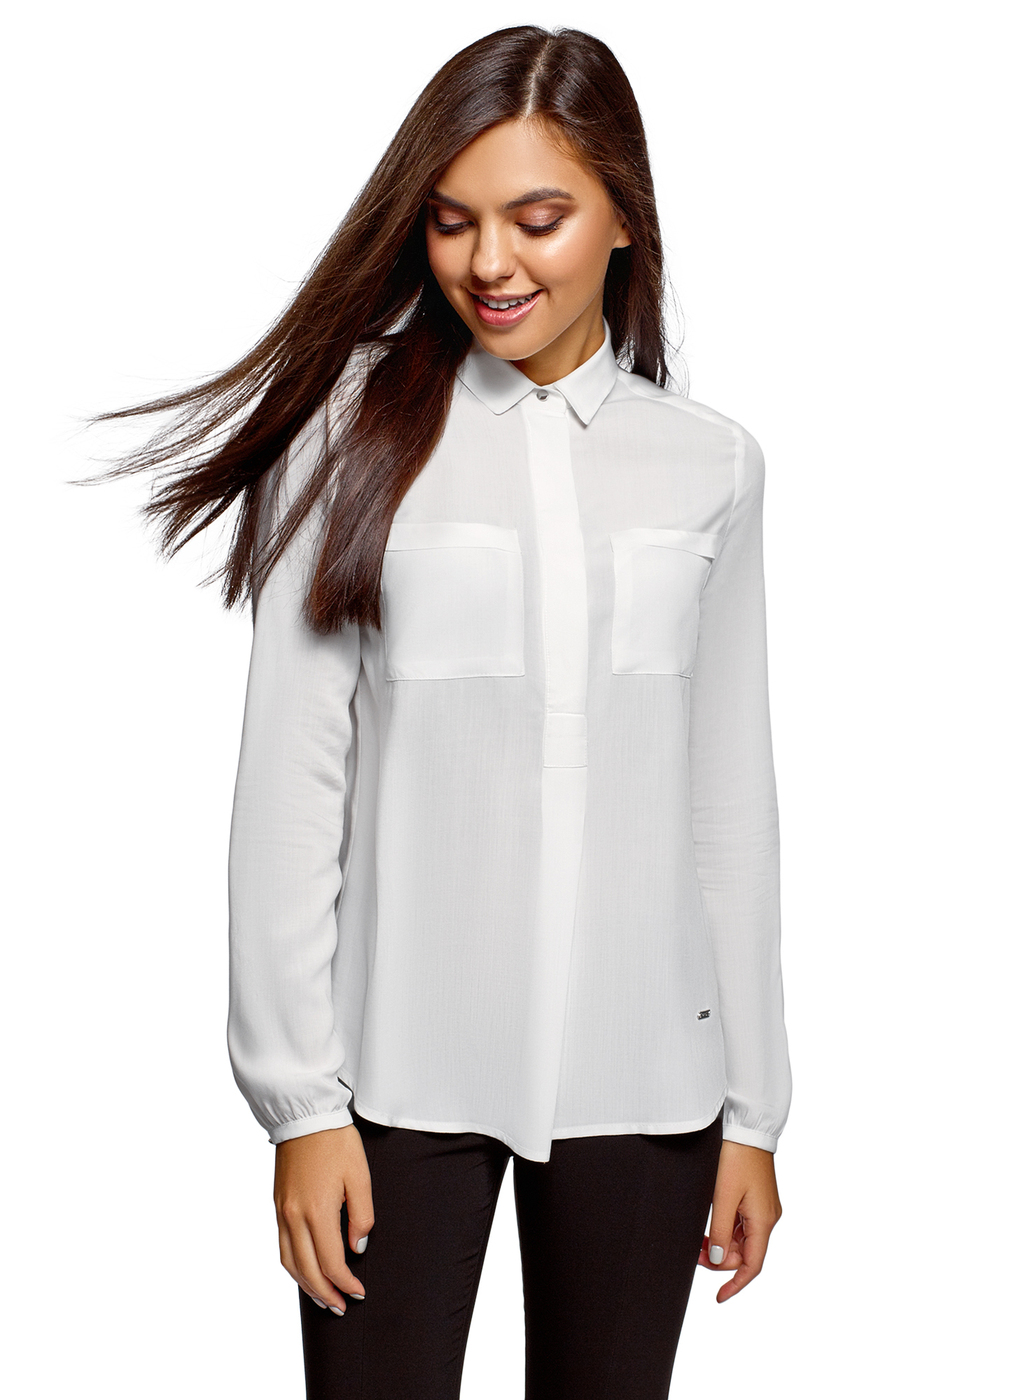 Купить белую рубашку женскую с длинным. Белая блузка oodji. Рубашка женская. Белая рубашка женская. Белая блузка женская.